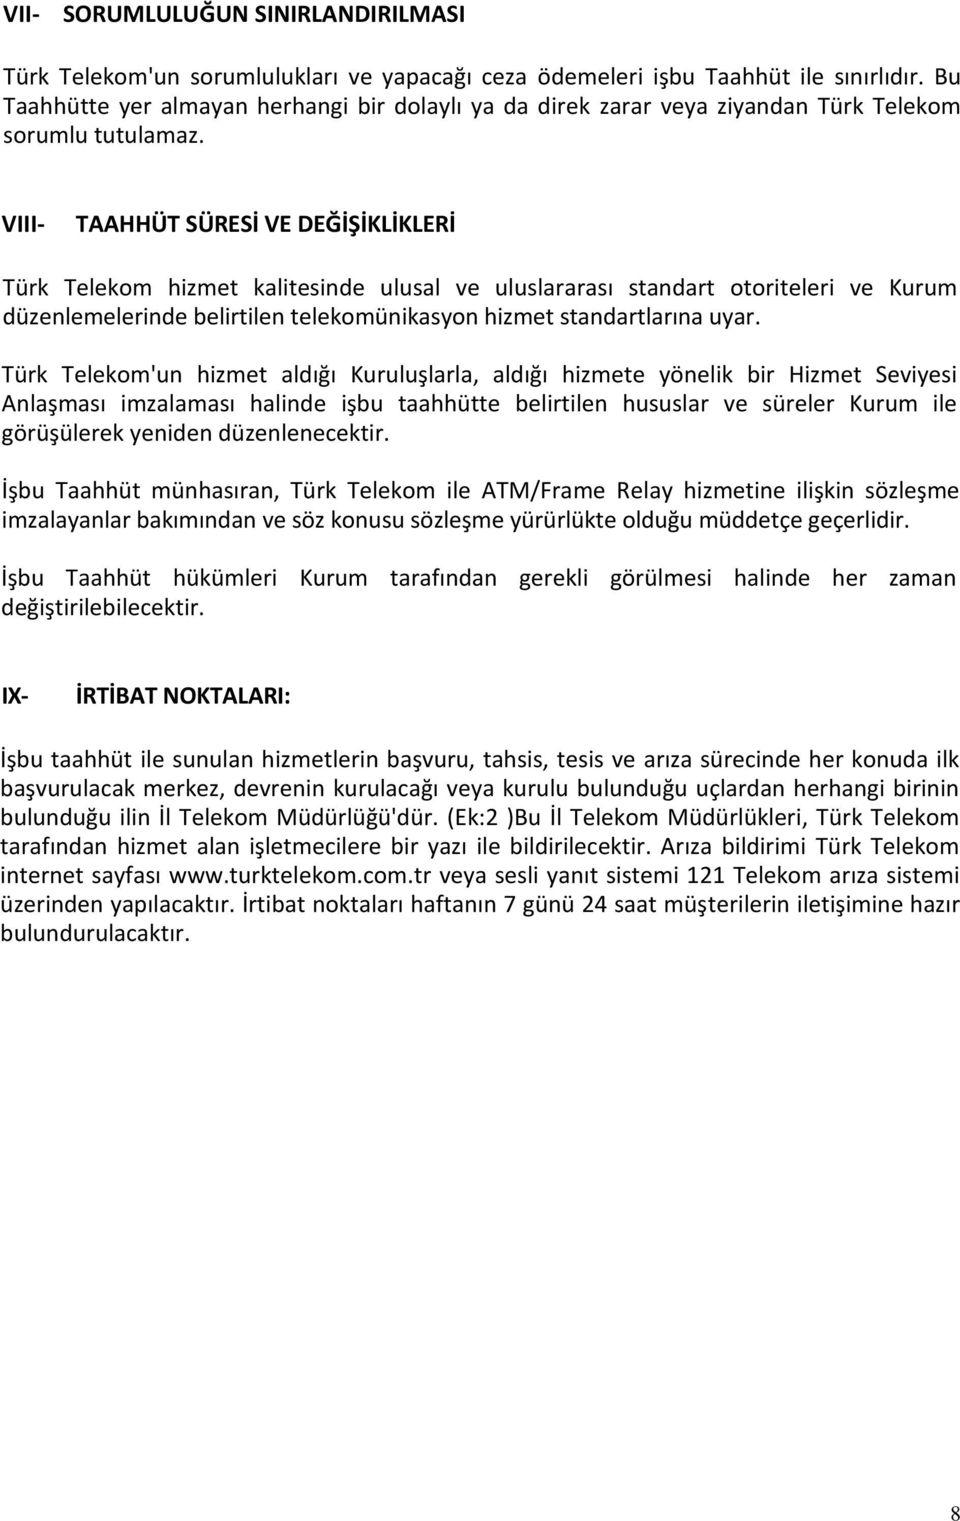 VIII- TAAHHÜT SÜRESİ VE DEĞİŞİKLİKLERİ Türk Telekom hizmet kalitesinde ulusal ve uluslararası standart otoriteleri ve Kurum düzenlemelerinde belirtilen telekomünikasyon hizmet standartlarına uyar.